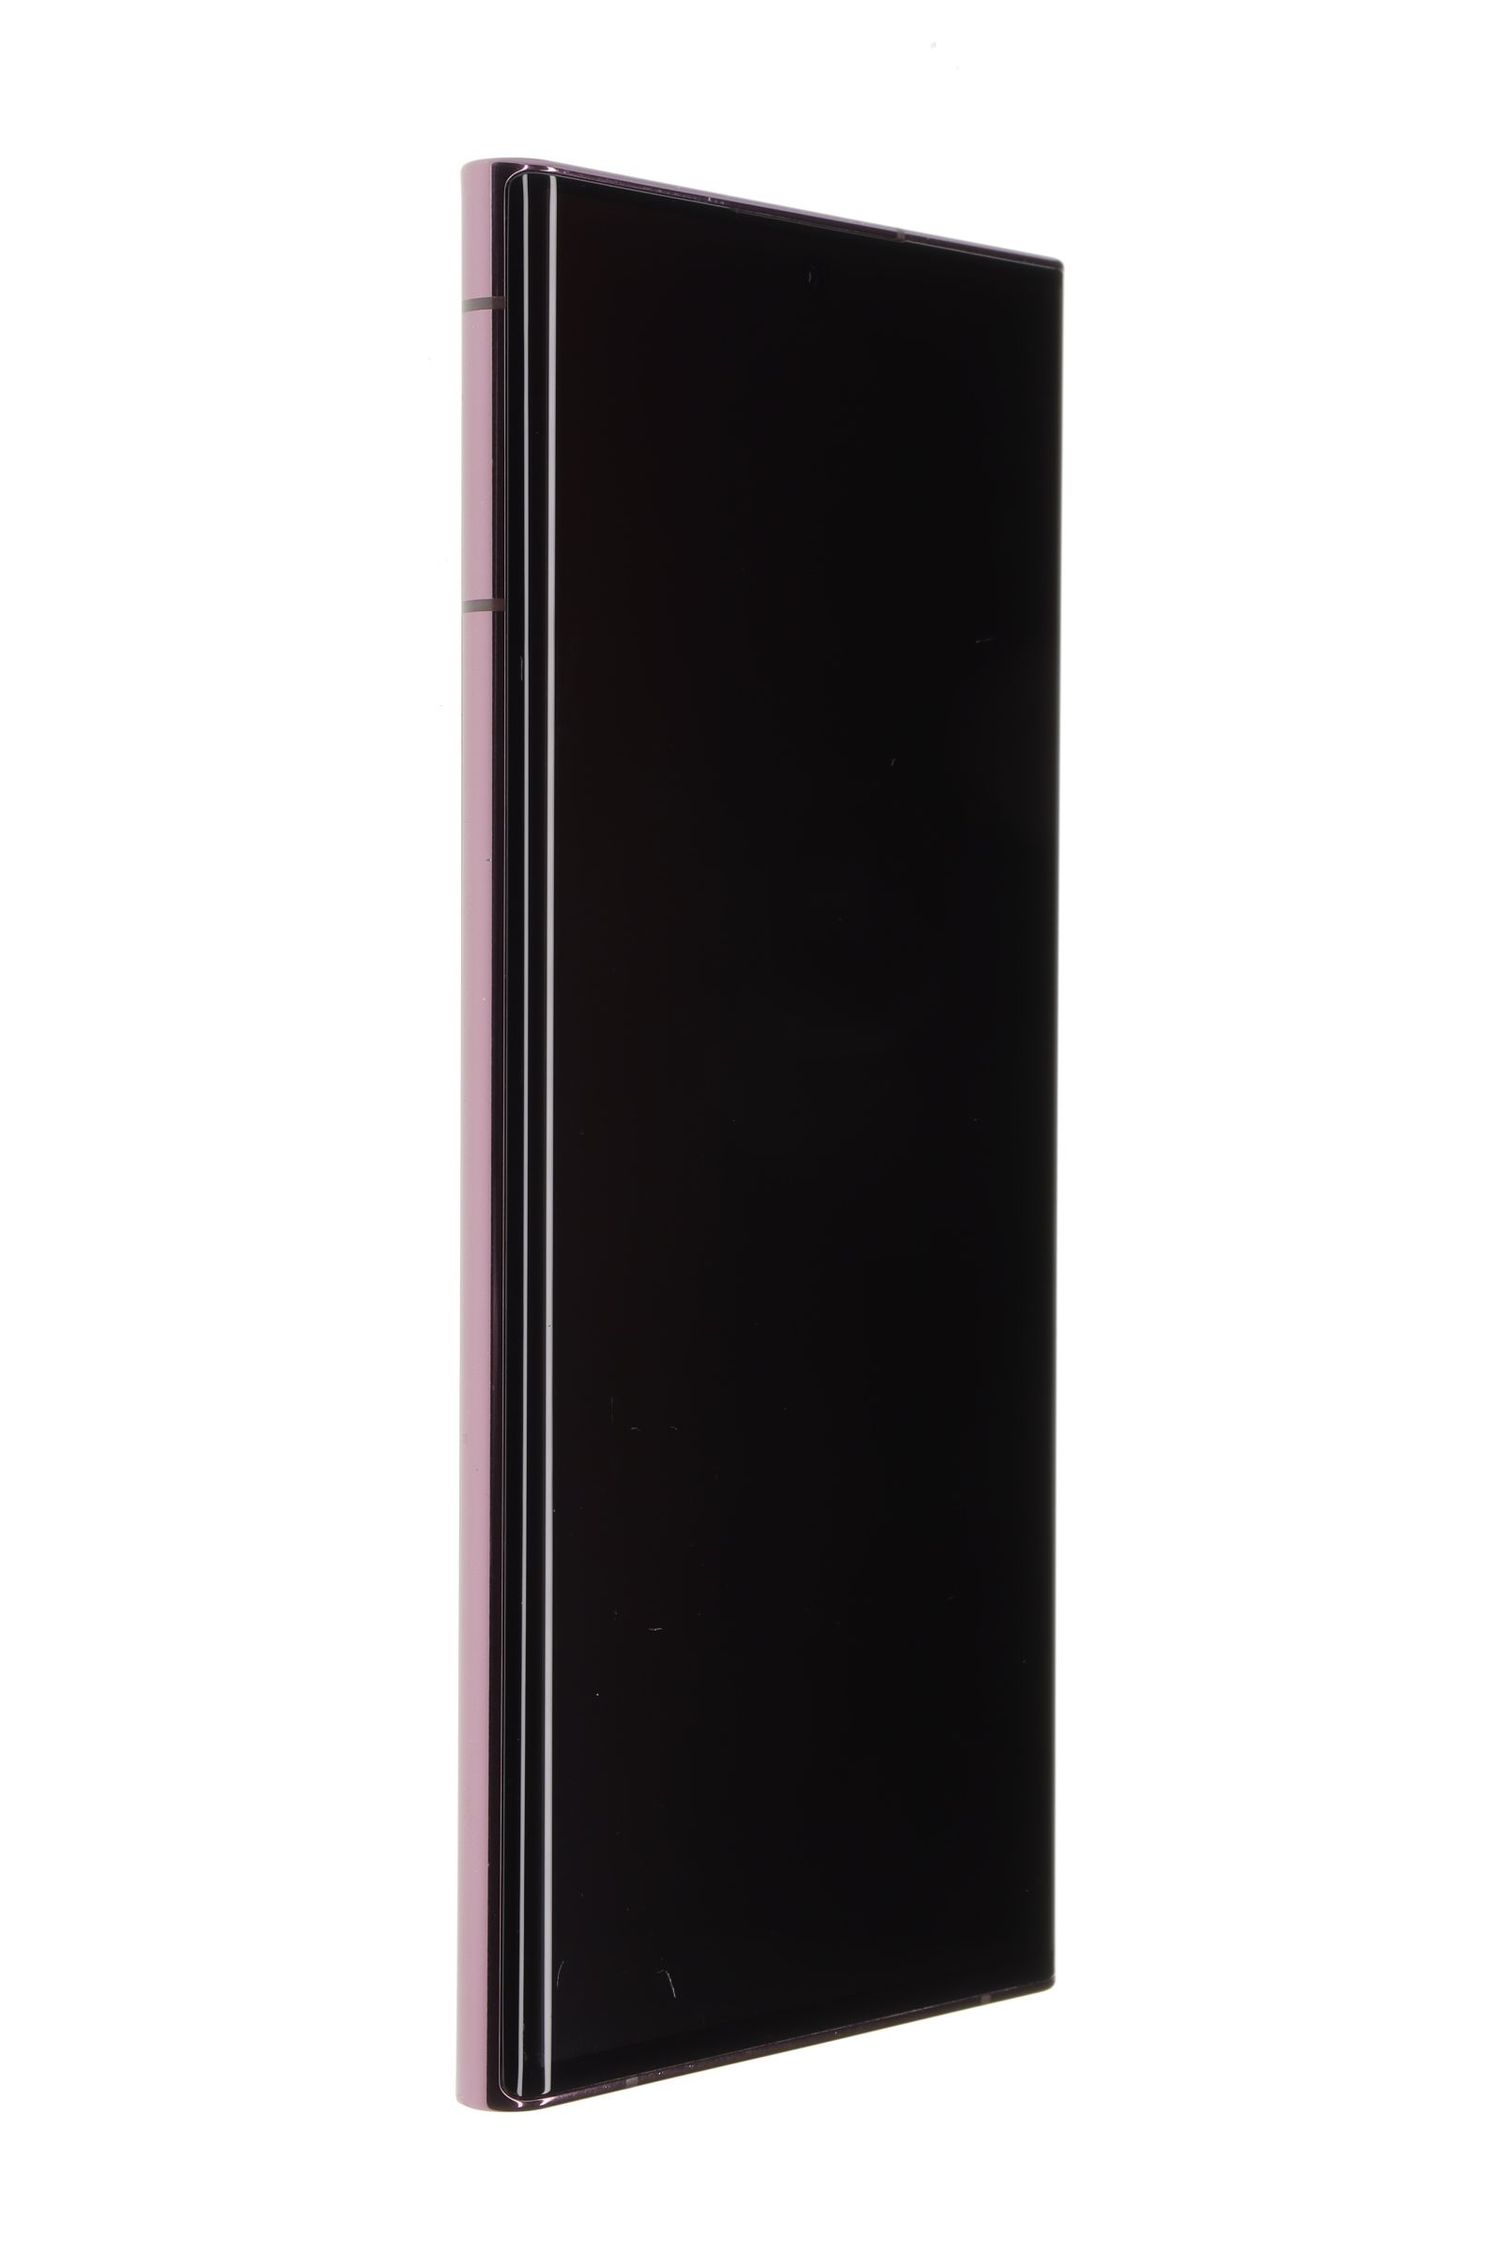 Мобилен телефон Samsung Galaxy S22 Ultra 5G Dual Sim, Burgundy, 256 GB, Foarte Bun